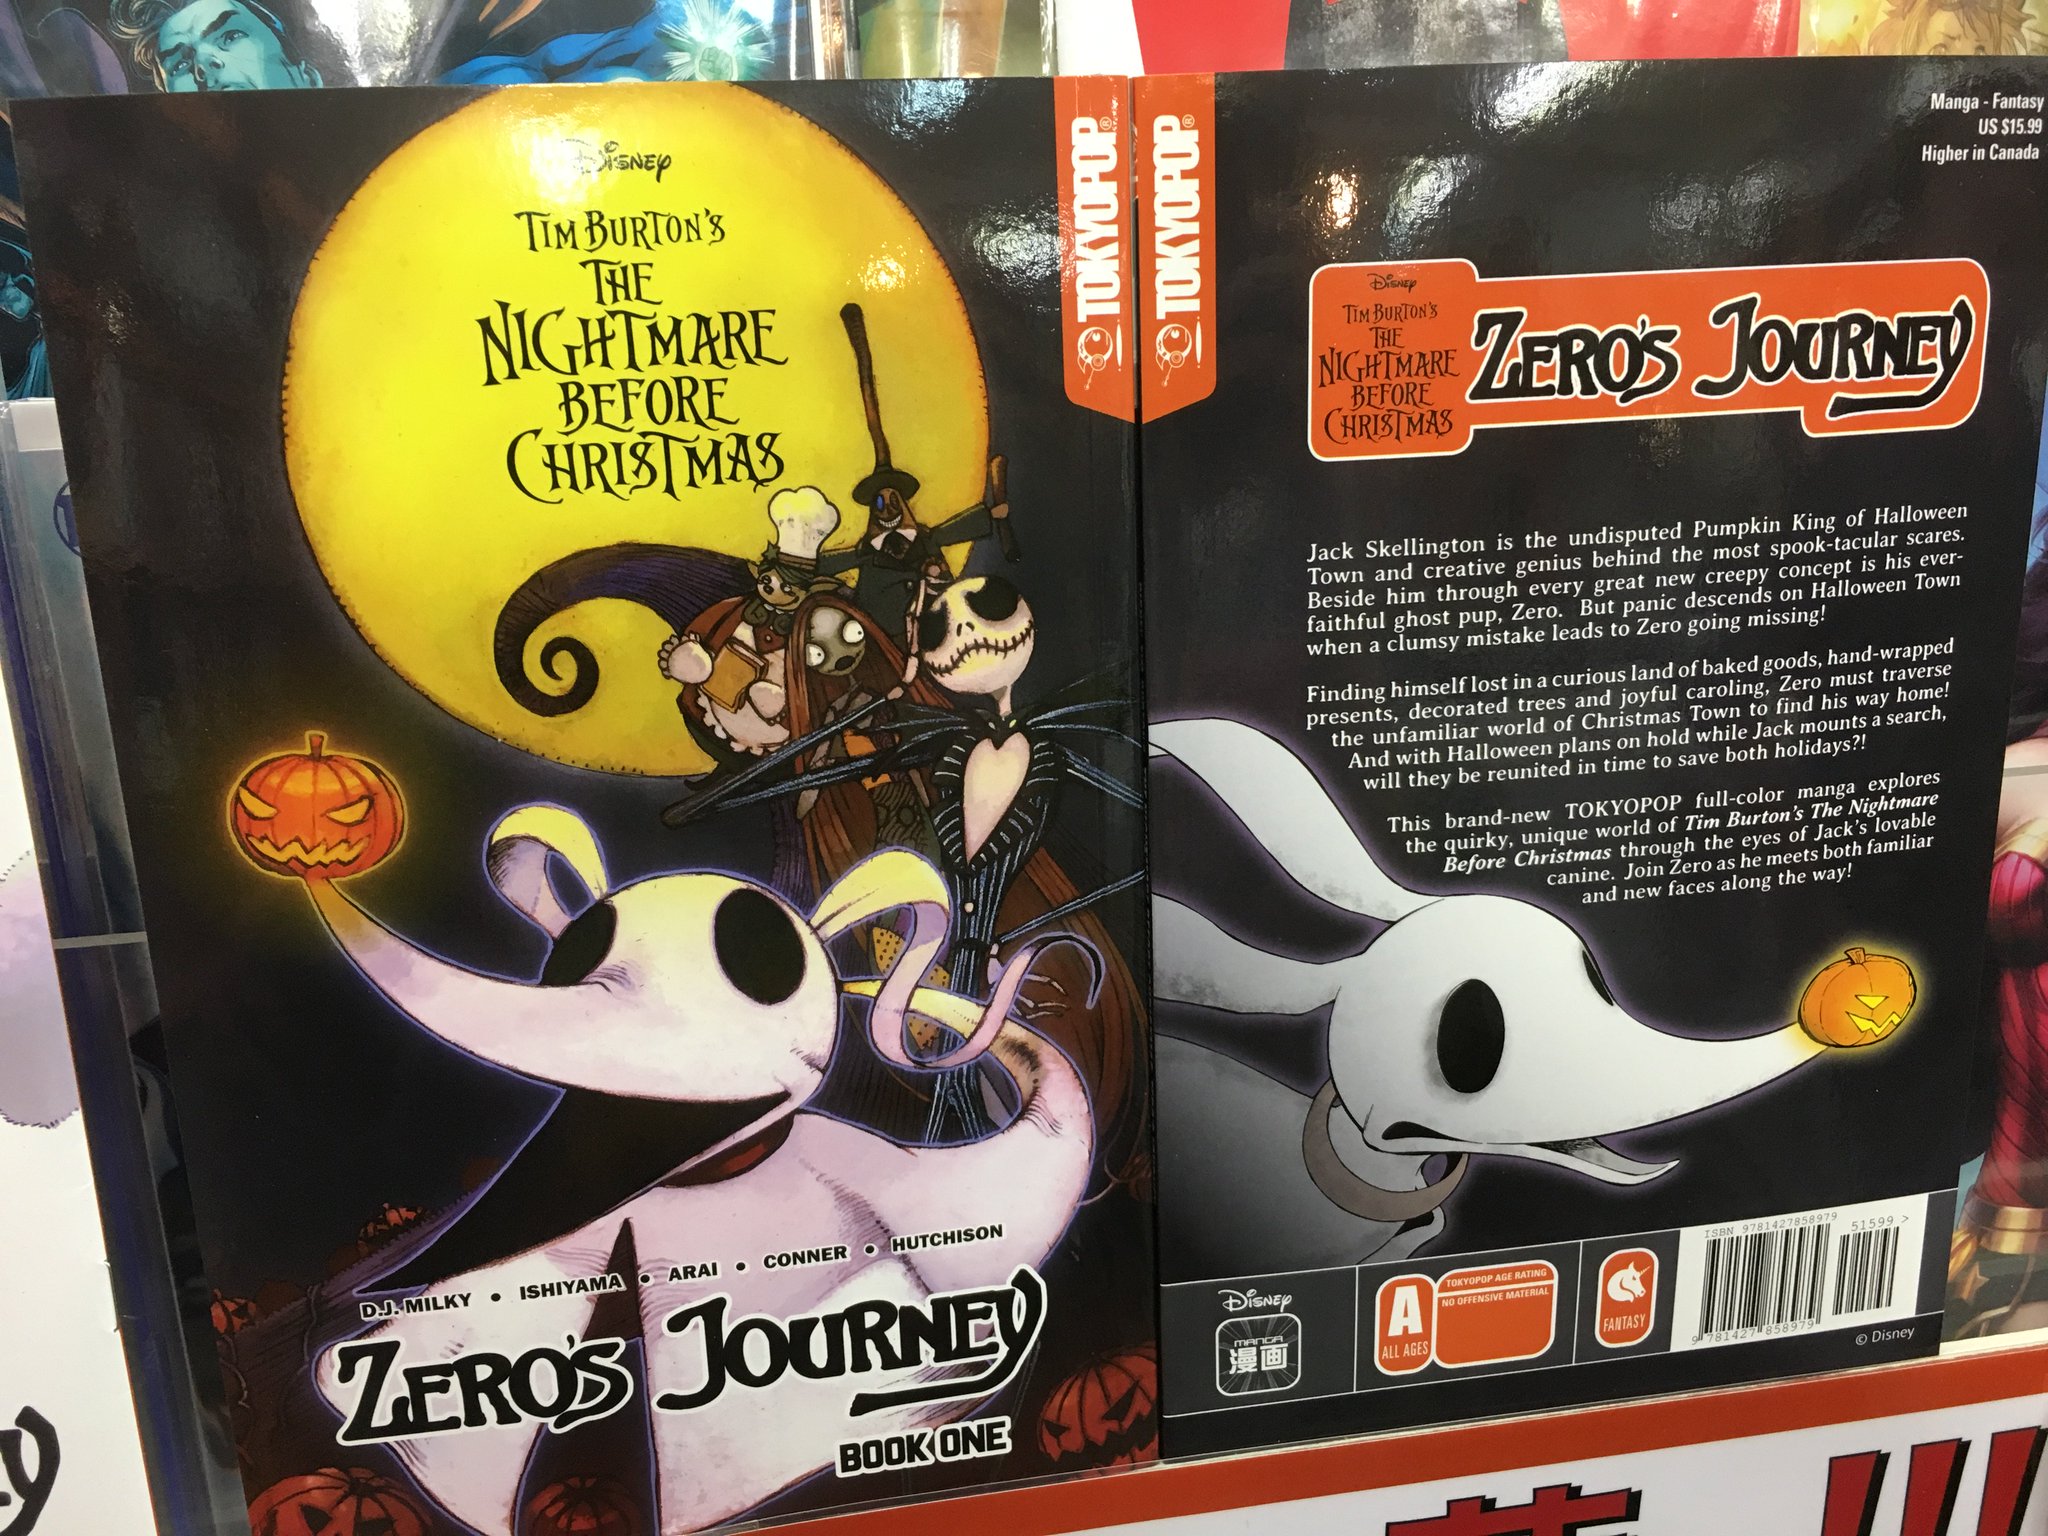 ブリスターコミックス ナイトメアー ビフォア クリスマス ディズニー公式の続編はコミックとして刊行中 可愛すぎます幽霊犬ゼロを主人公にした Zero S Journey 単行本1巻が到着 最新話の 7 画像2枚目 T Co Pa91z63vq7 も今週新刊リーフ